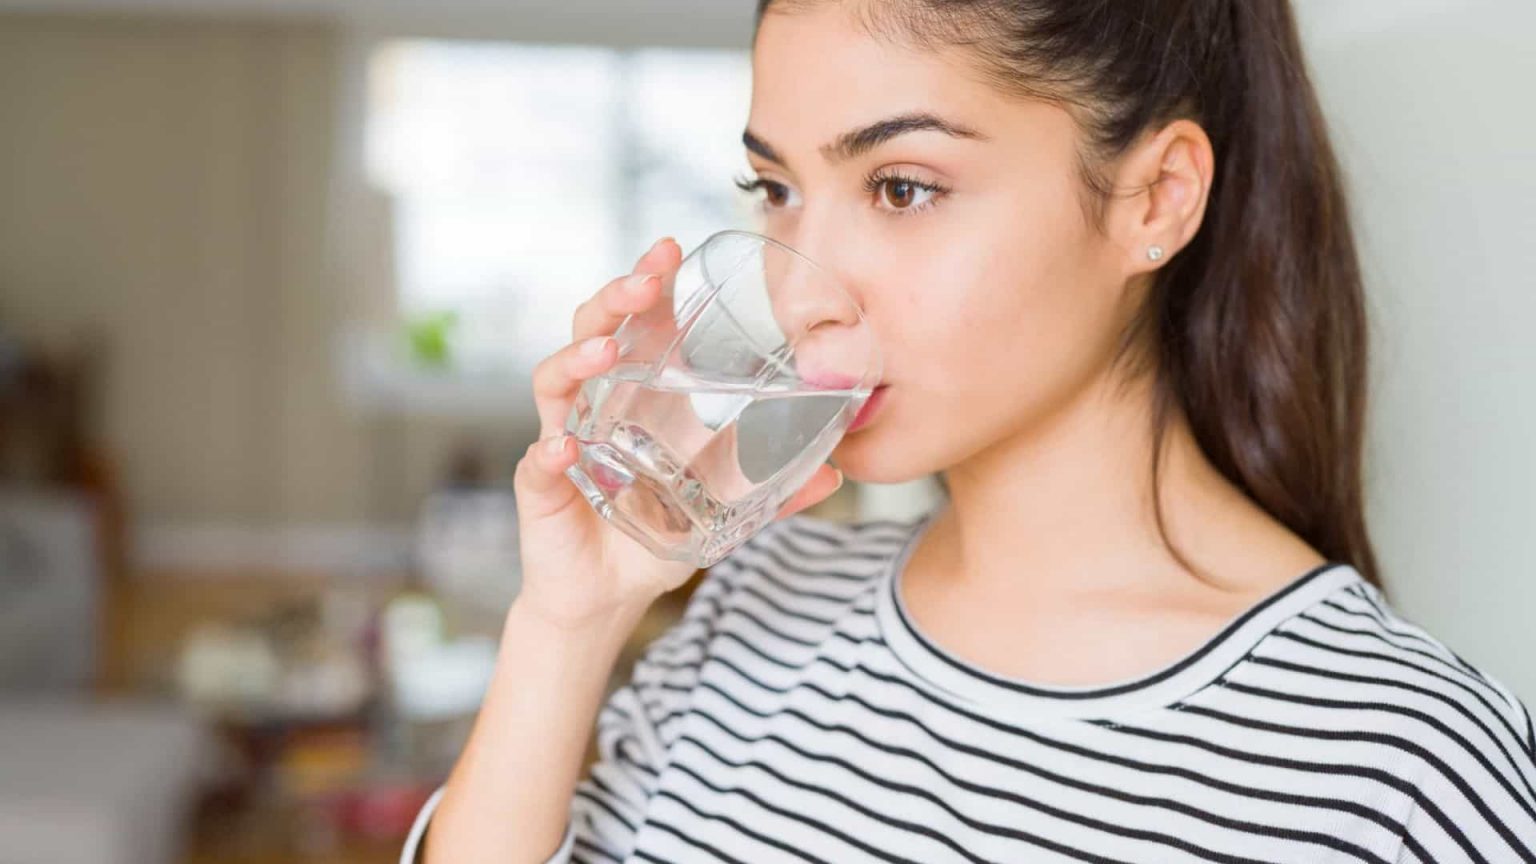 Começar o dia com um copo de água faz bem à saúde. Verdade ou mito? 11